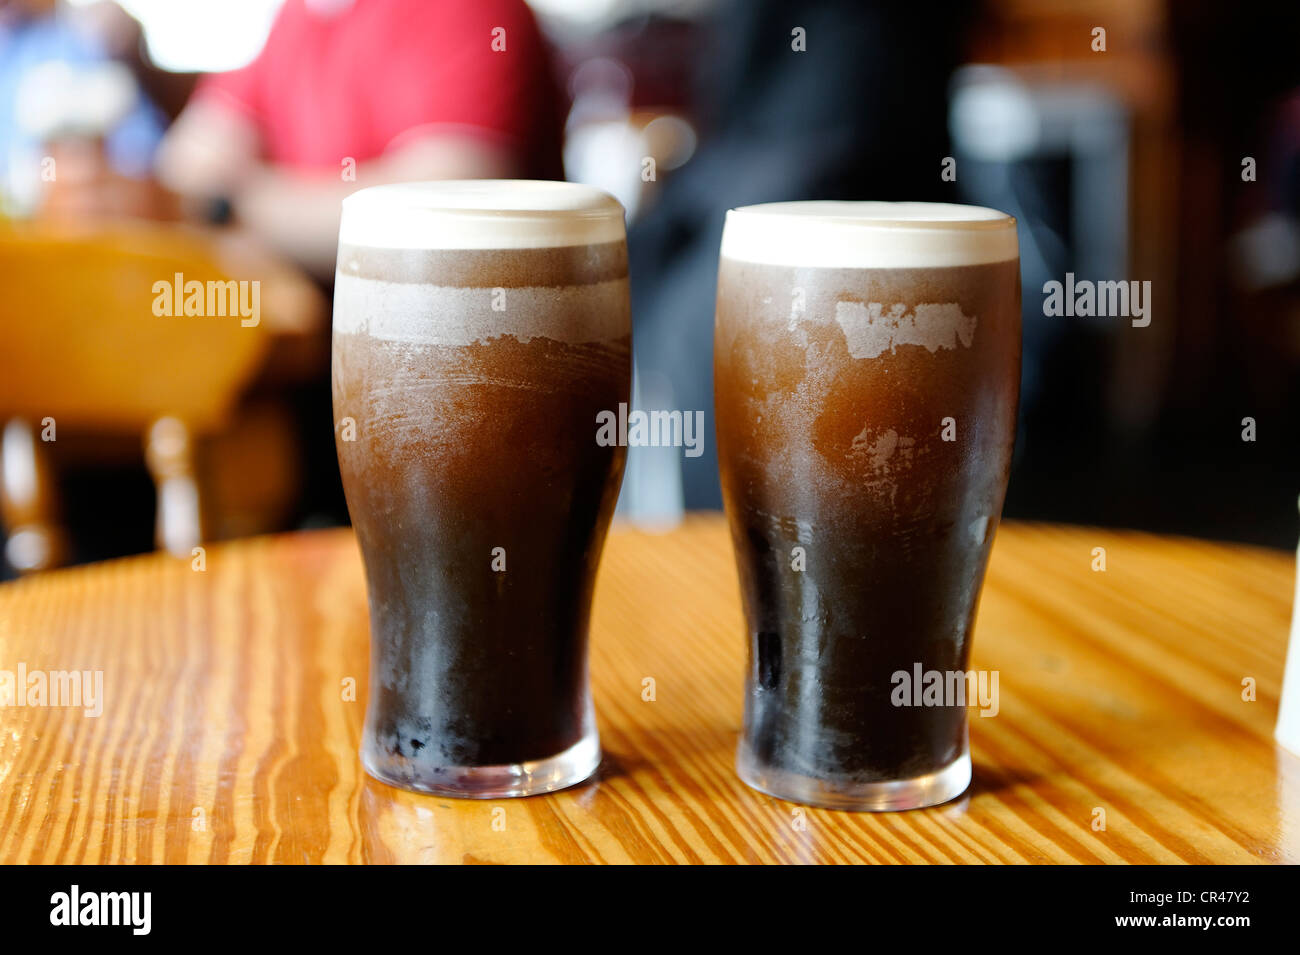 Deux pintes de Guinness, Irlande, Europe Banque D'Images